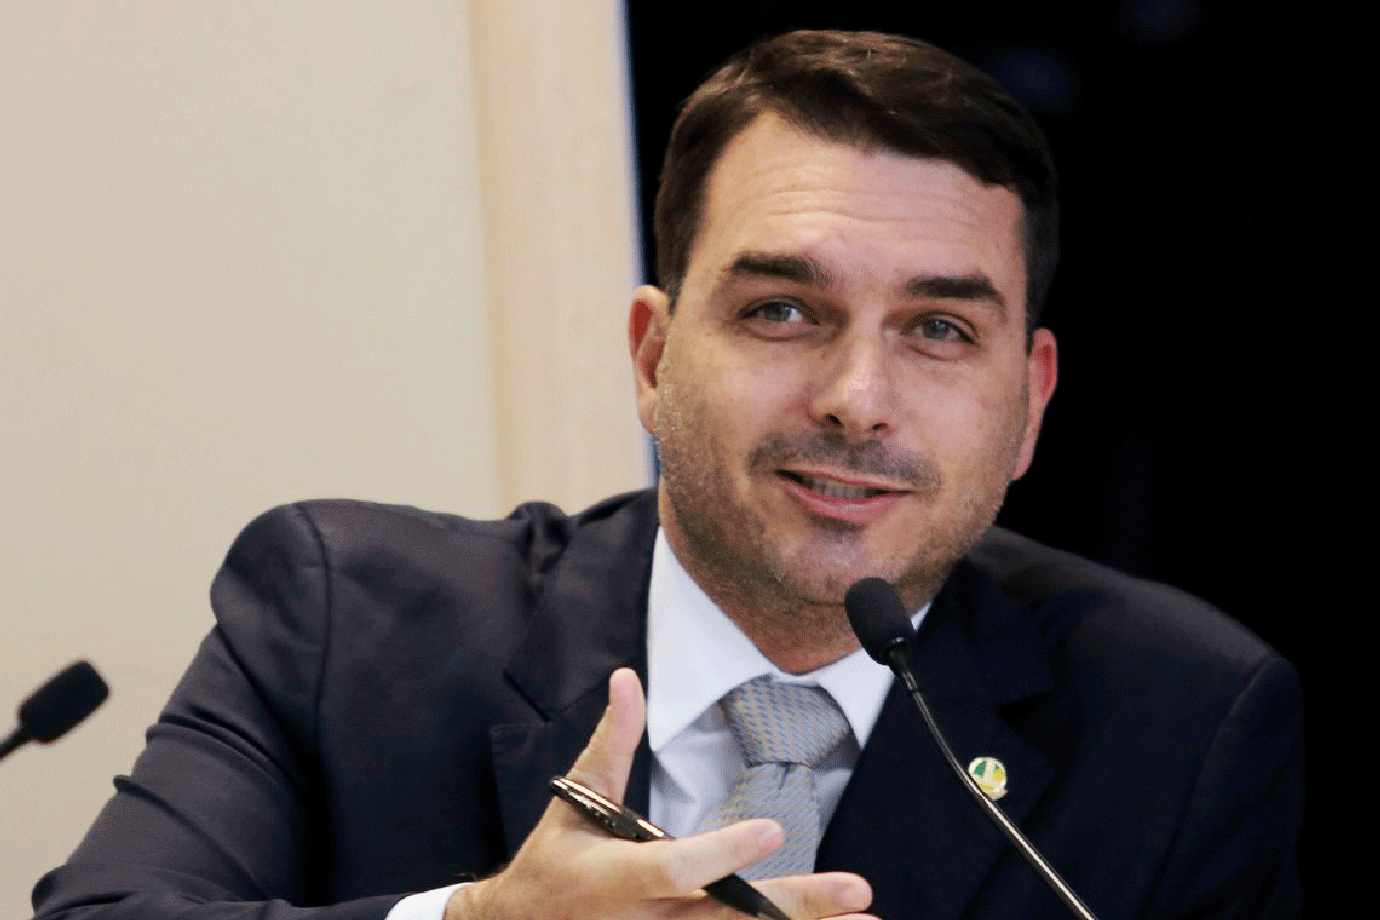 Senador Flávio Bolsonaro participa de assinatura de contrato de adesão do Terminal UTE GNA I do Porto do Açú - para movimentação de GNL (Gás Natural Liquefeito).